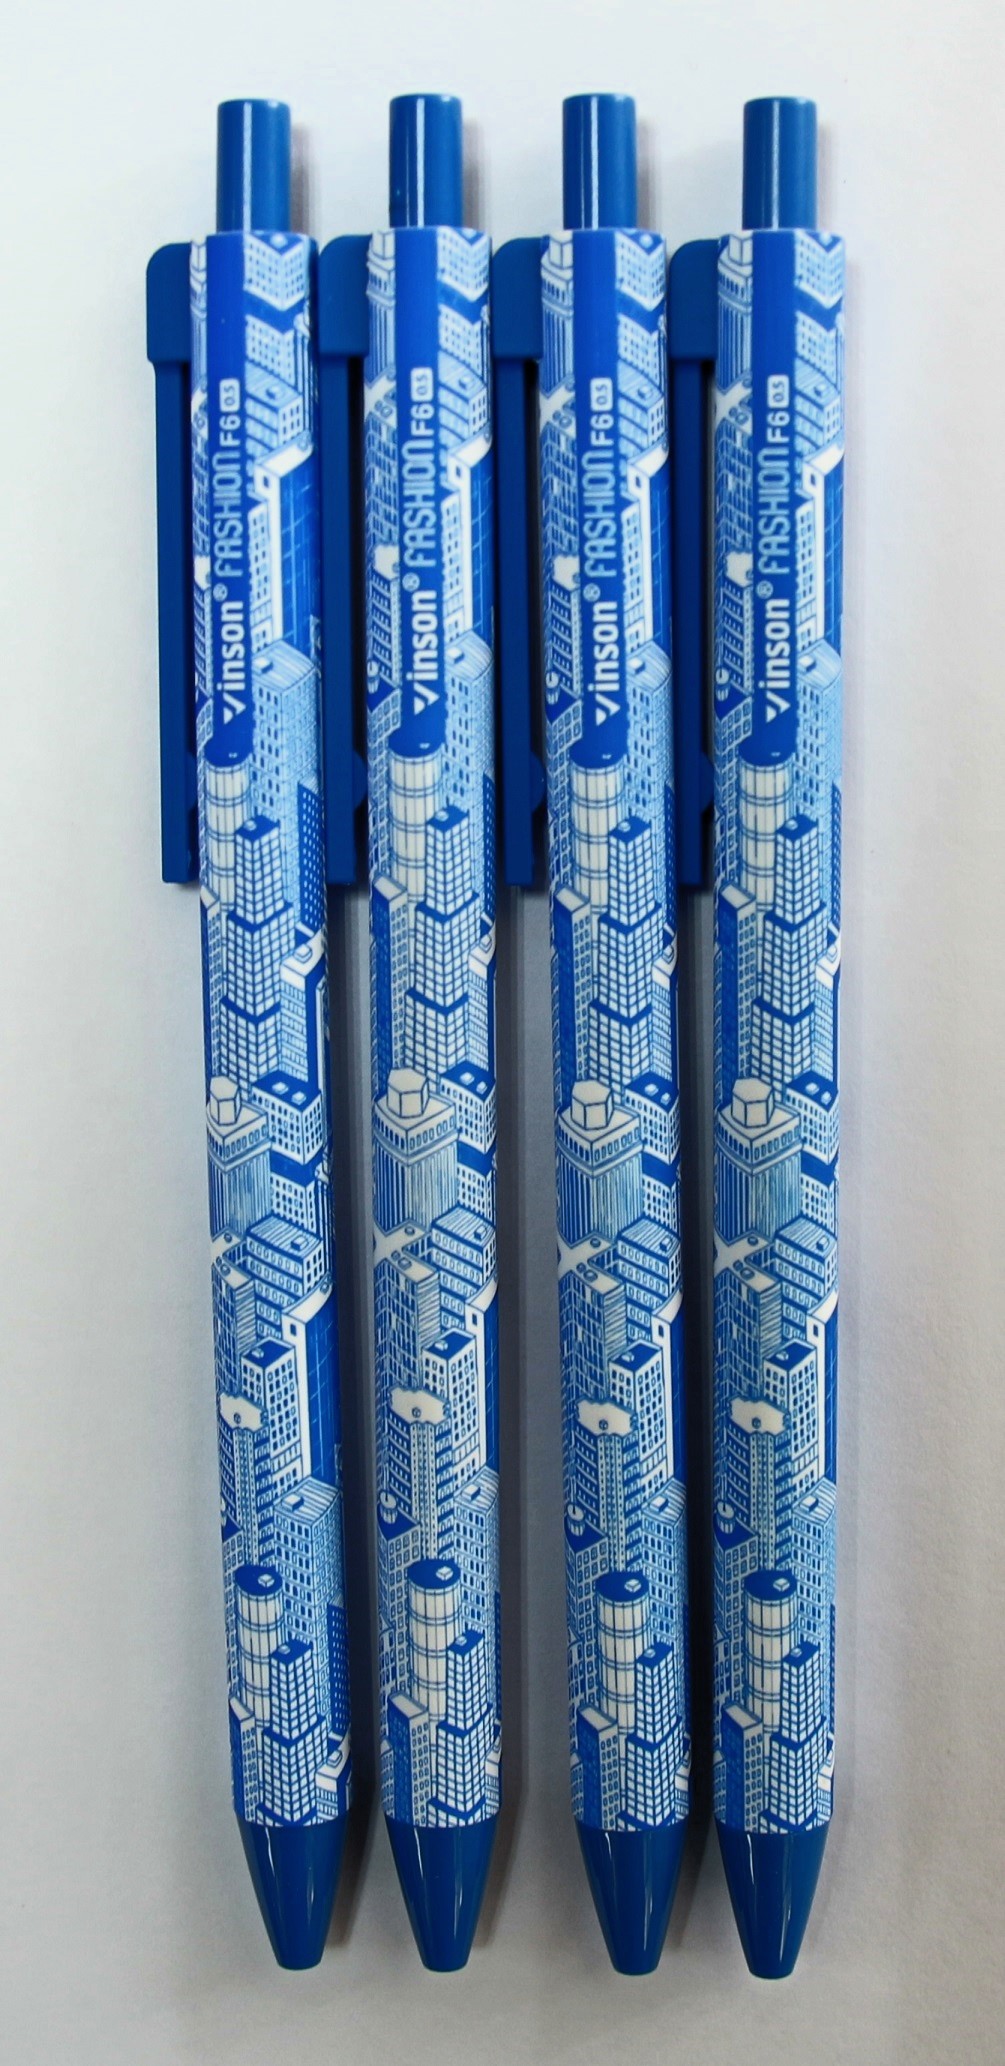 Ручка шариковая Vinson F6-bl Smooth Writing Building автомат, синяя, 0,7 мм, 4 штуки